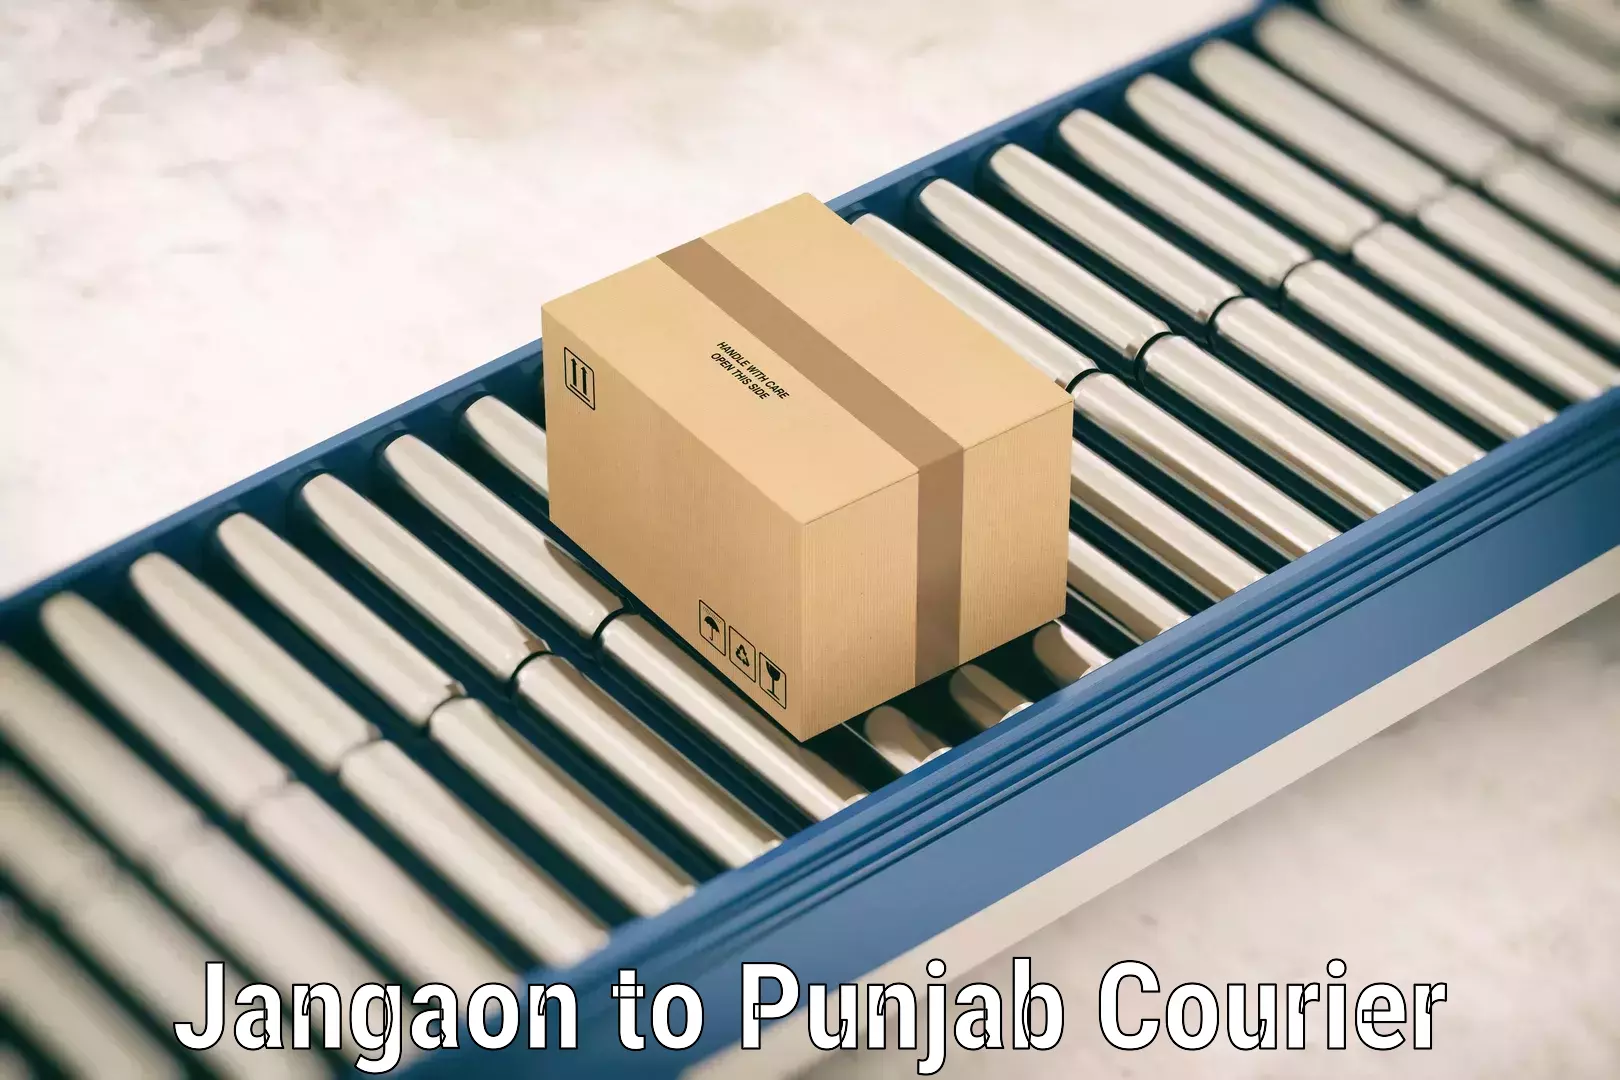 Heavy luggage shipping Jangaon to Punjab